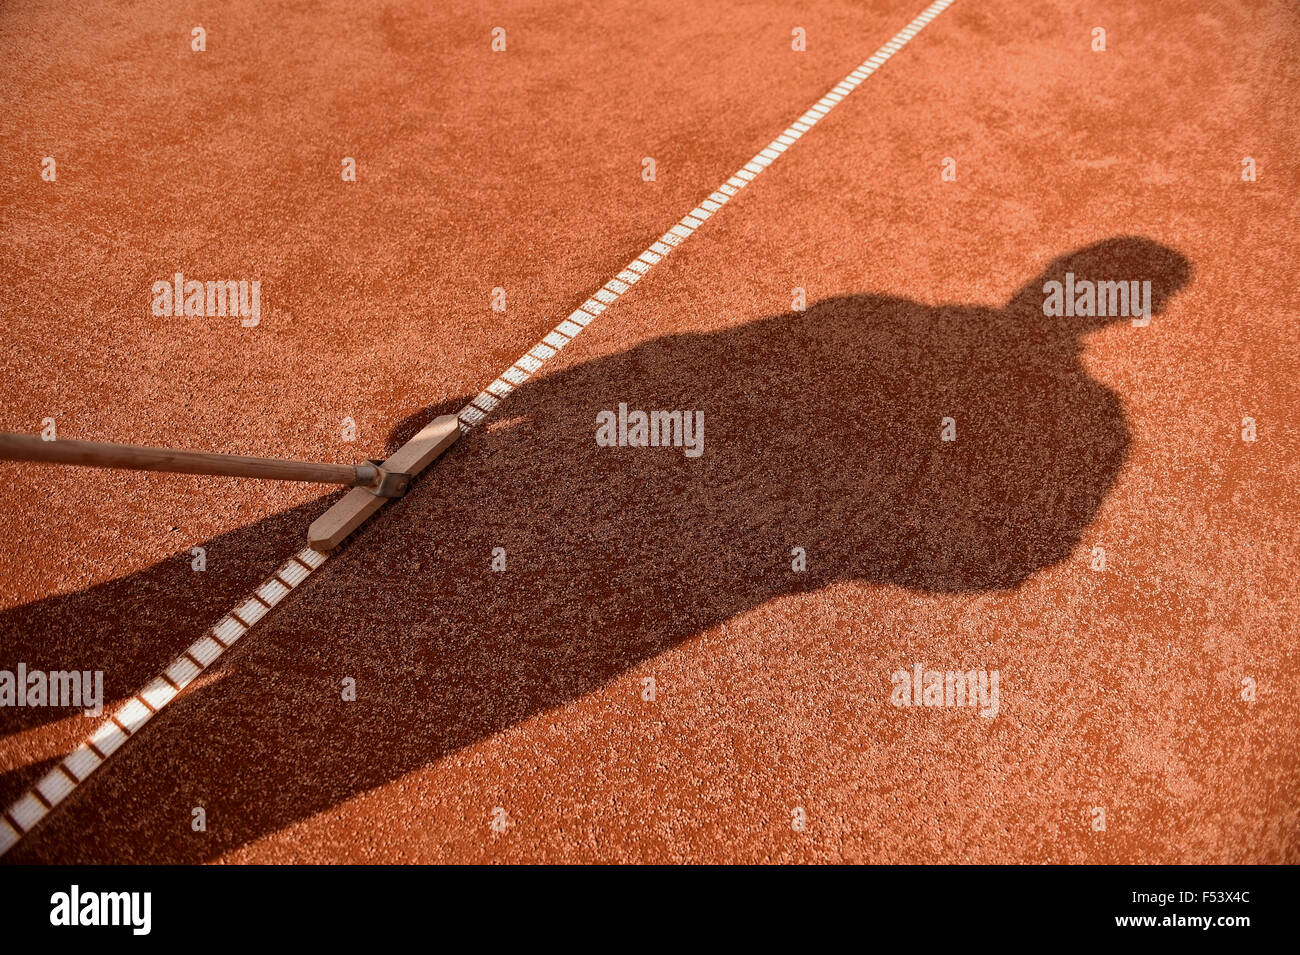 Outil balai pour l'entretien de la cour de tennis en terre battue Banque D'Images